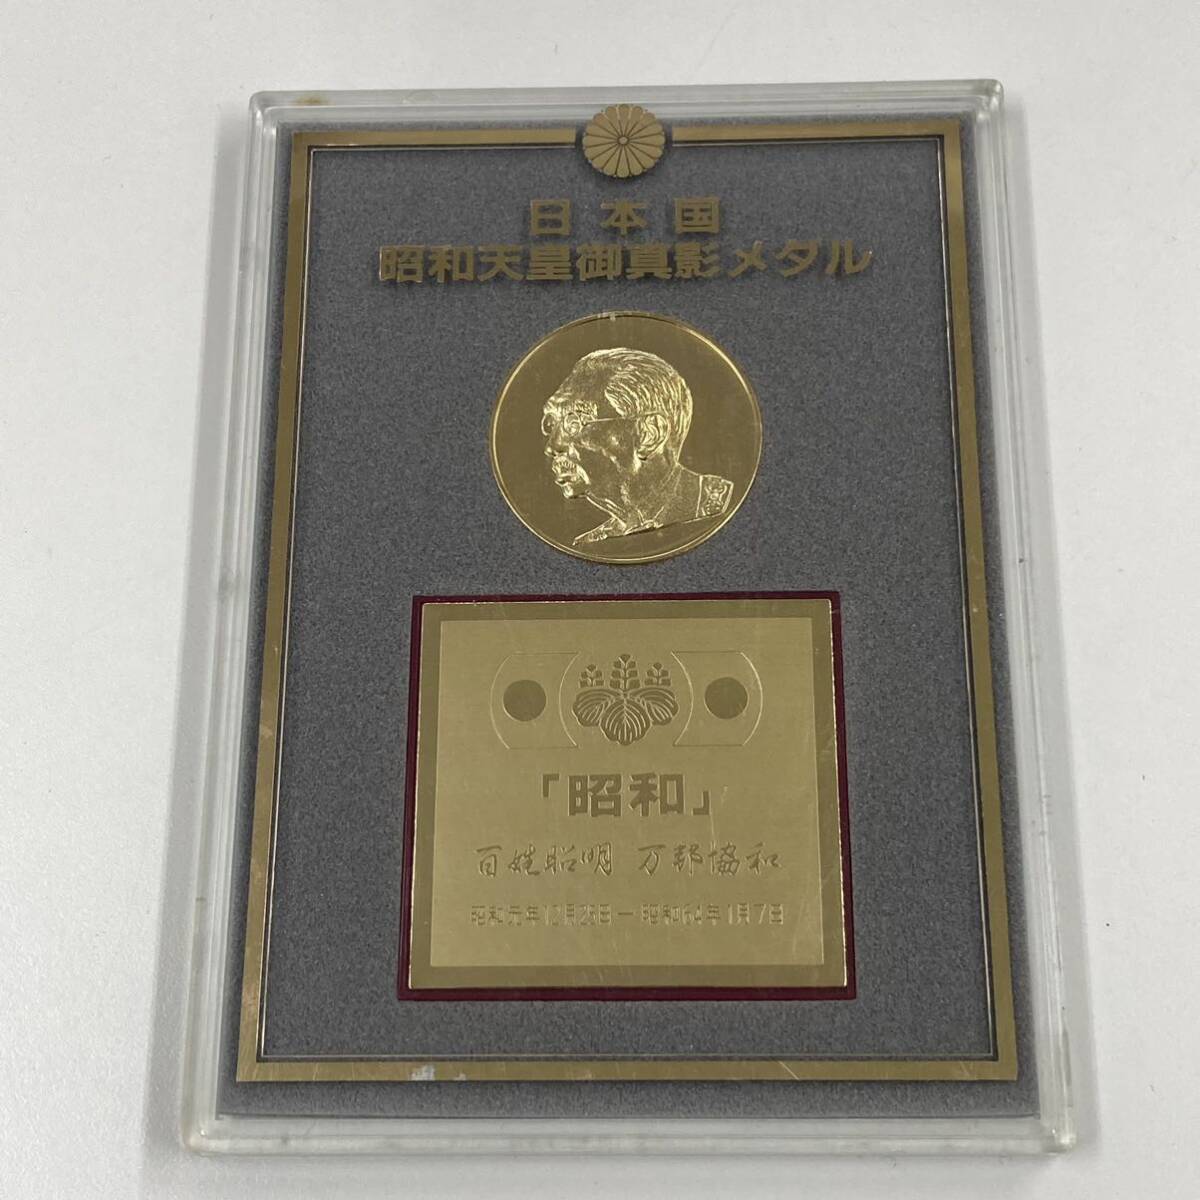 【A6D158】日本国 昭和天皇御真影メダル 第124第昭和天皇 1901-1989年 通常保管品 記念メダル の画像6